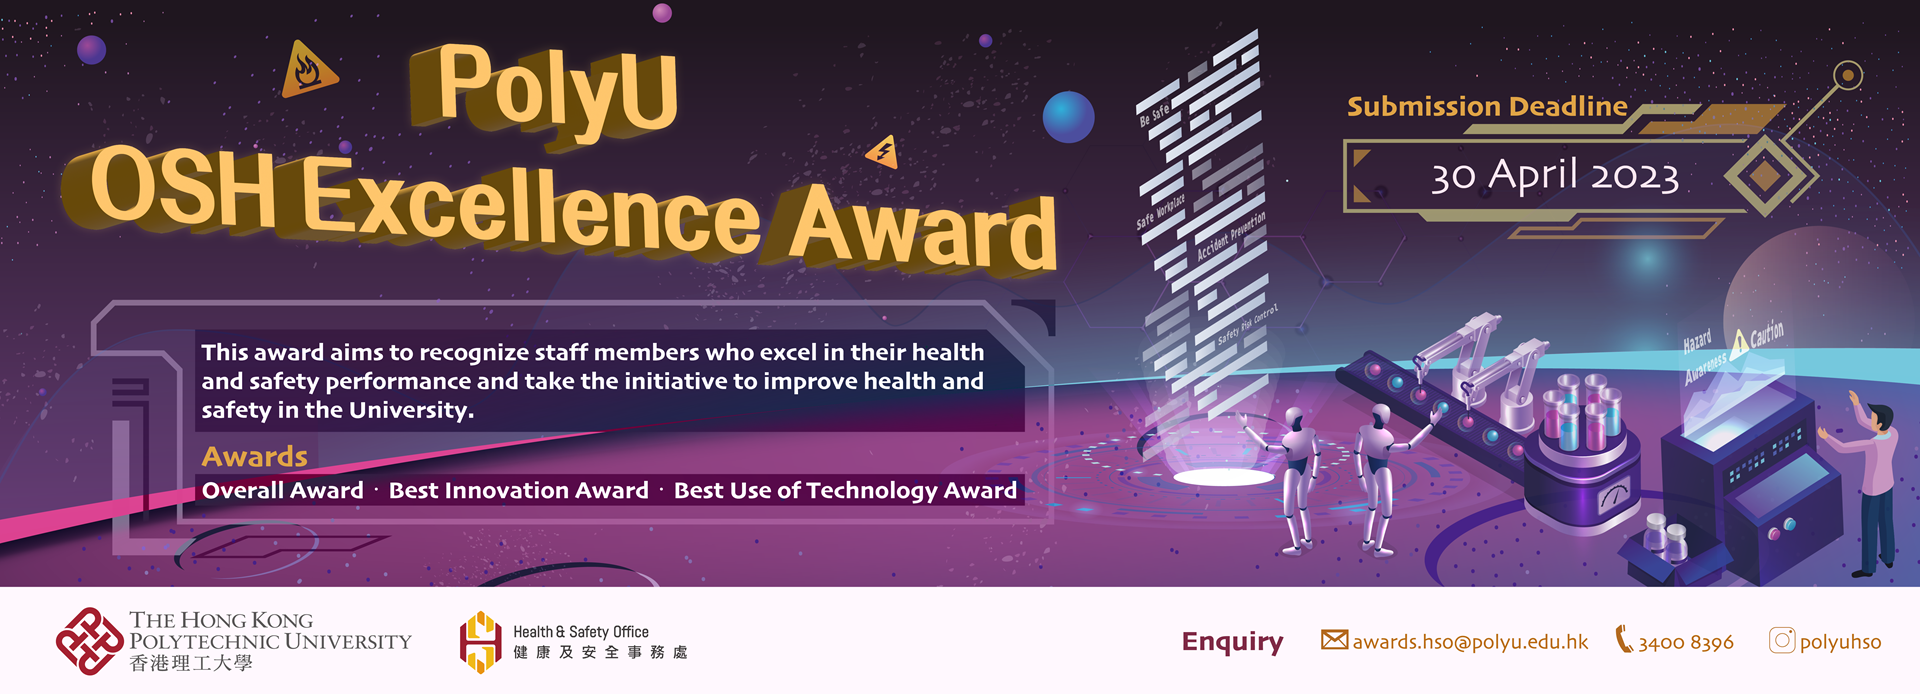 PolyU OSH Excellence Award